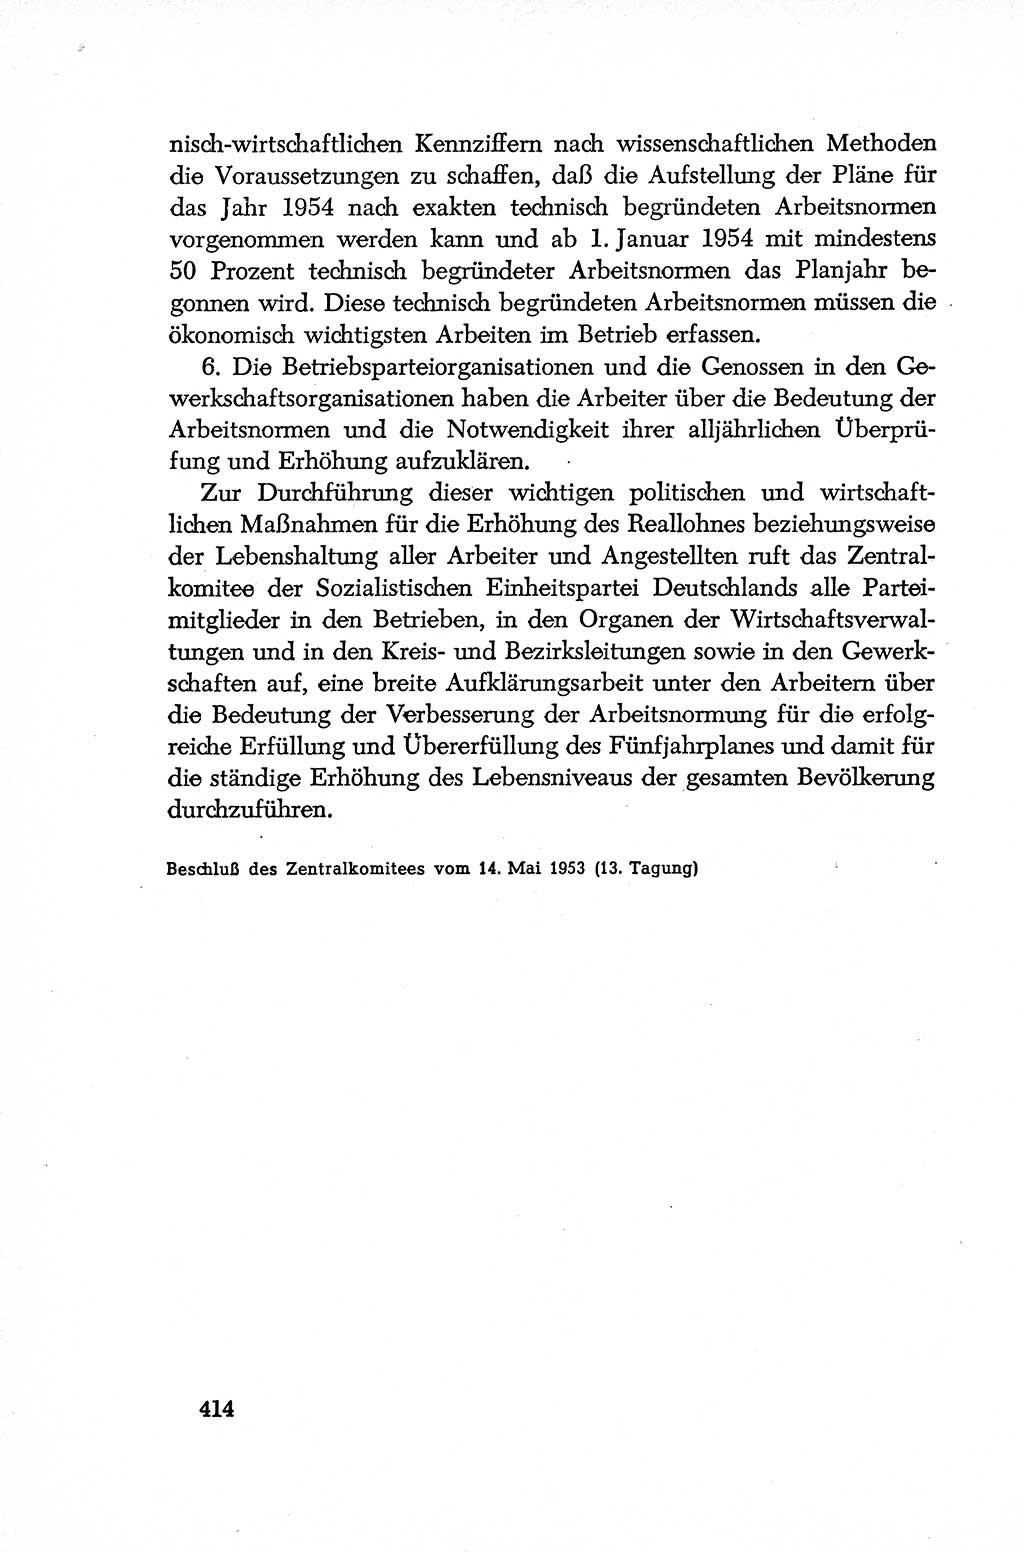 Dokumente der Sozialistischen Einheitspartei Deutschlands (SED) [Deutsche Demokratische Republik (DDR)] 1952-1953, Seite 414 (Dok. SED DDR 1952-1953, S. 414)